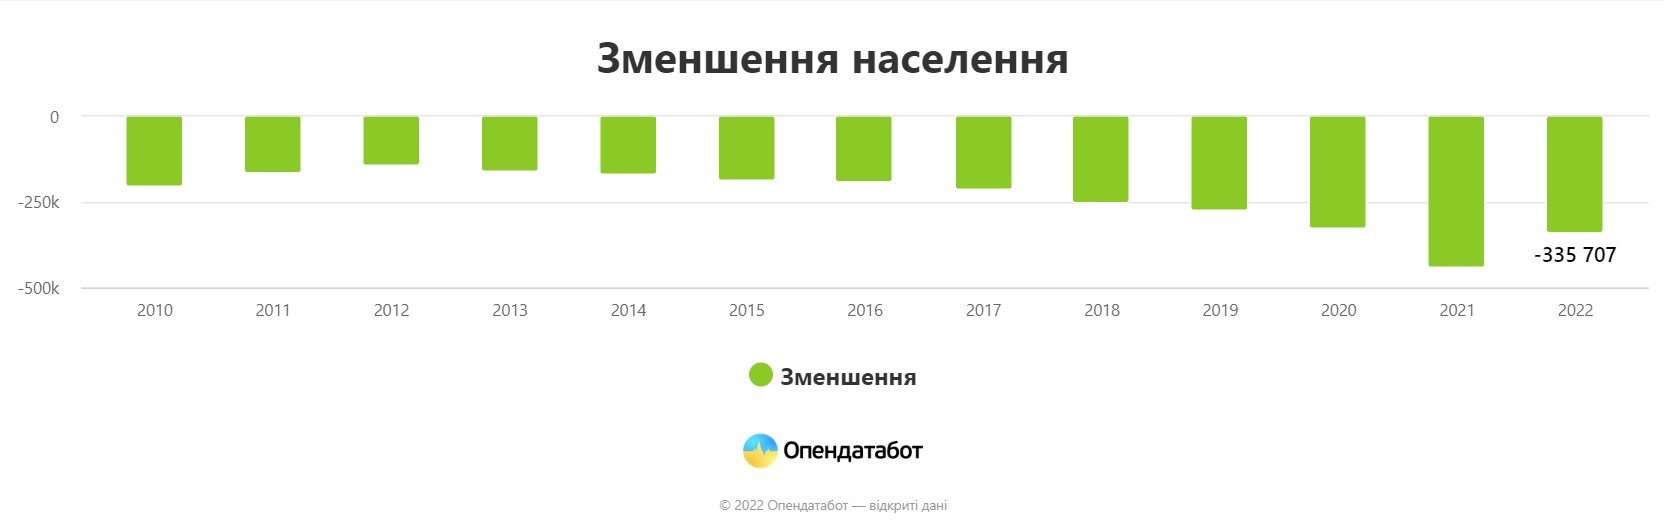 За минулий рік українців стало менше на 335 тисяч - зображення